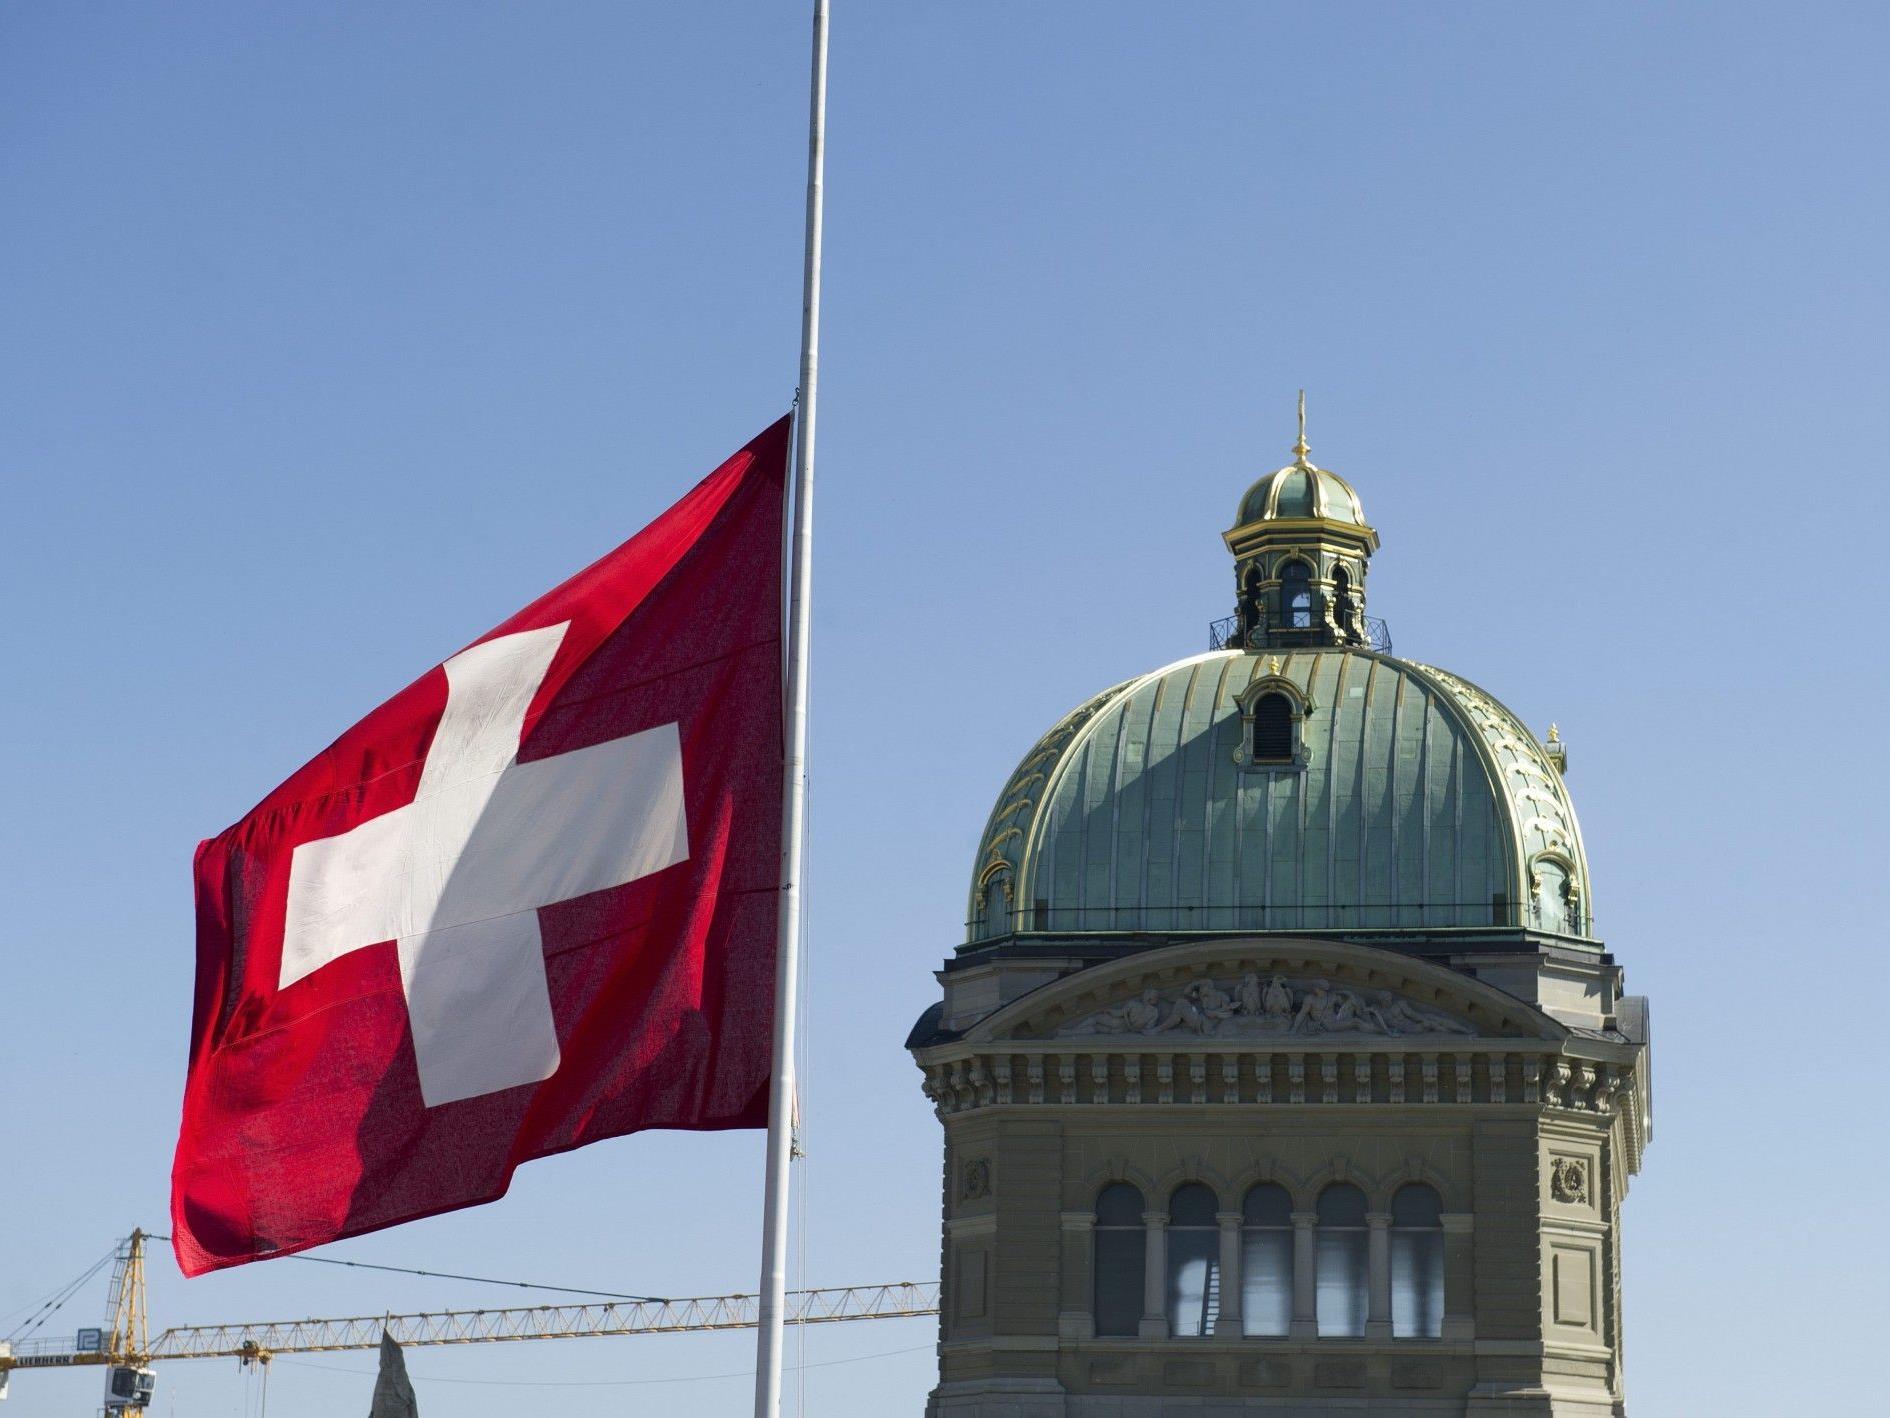 Basel-Landschaft schafft Pauschalbesteuerung ab, Bern erhöht Hürden